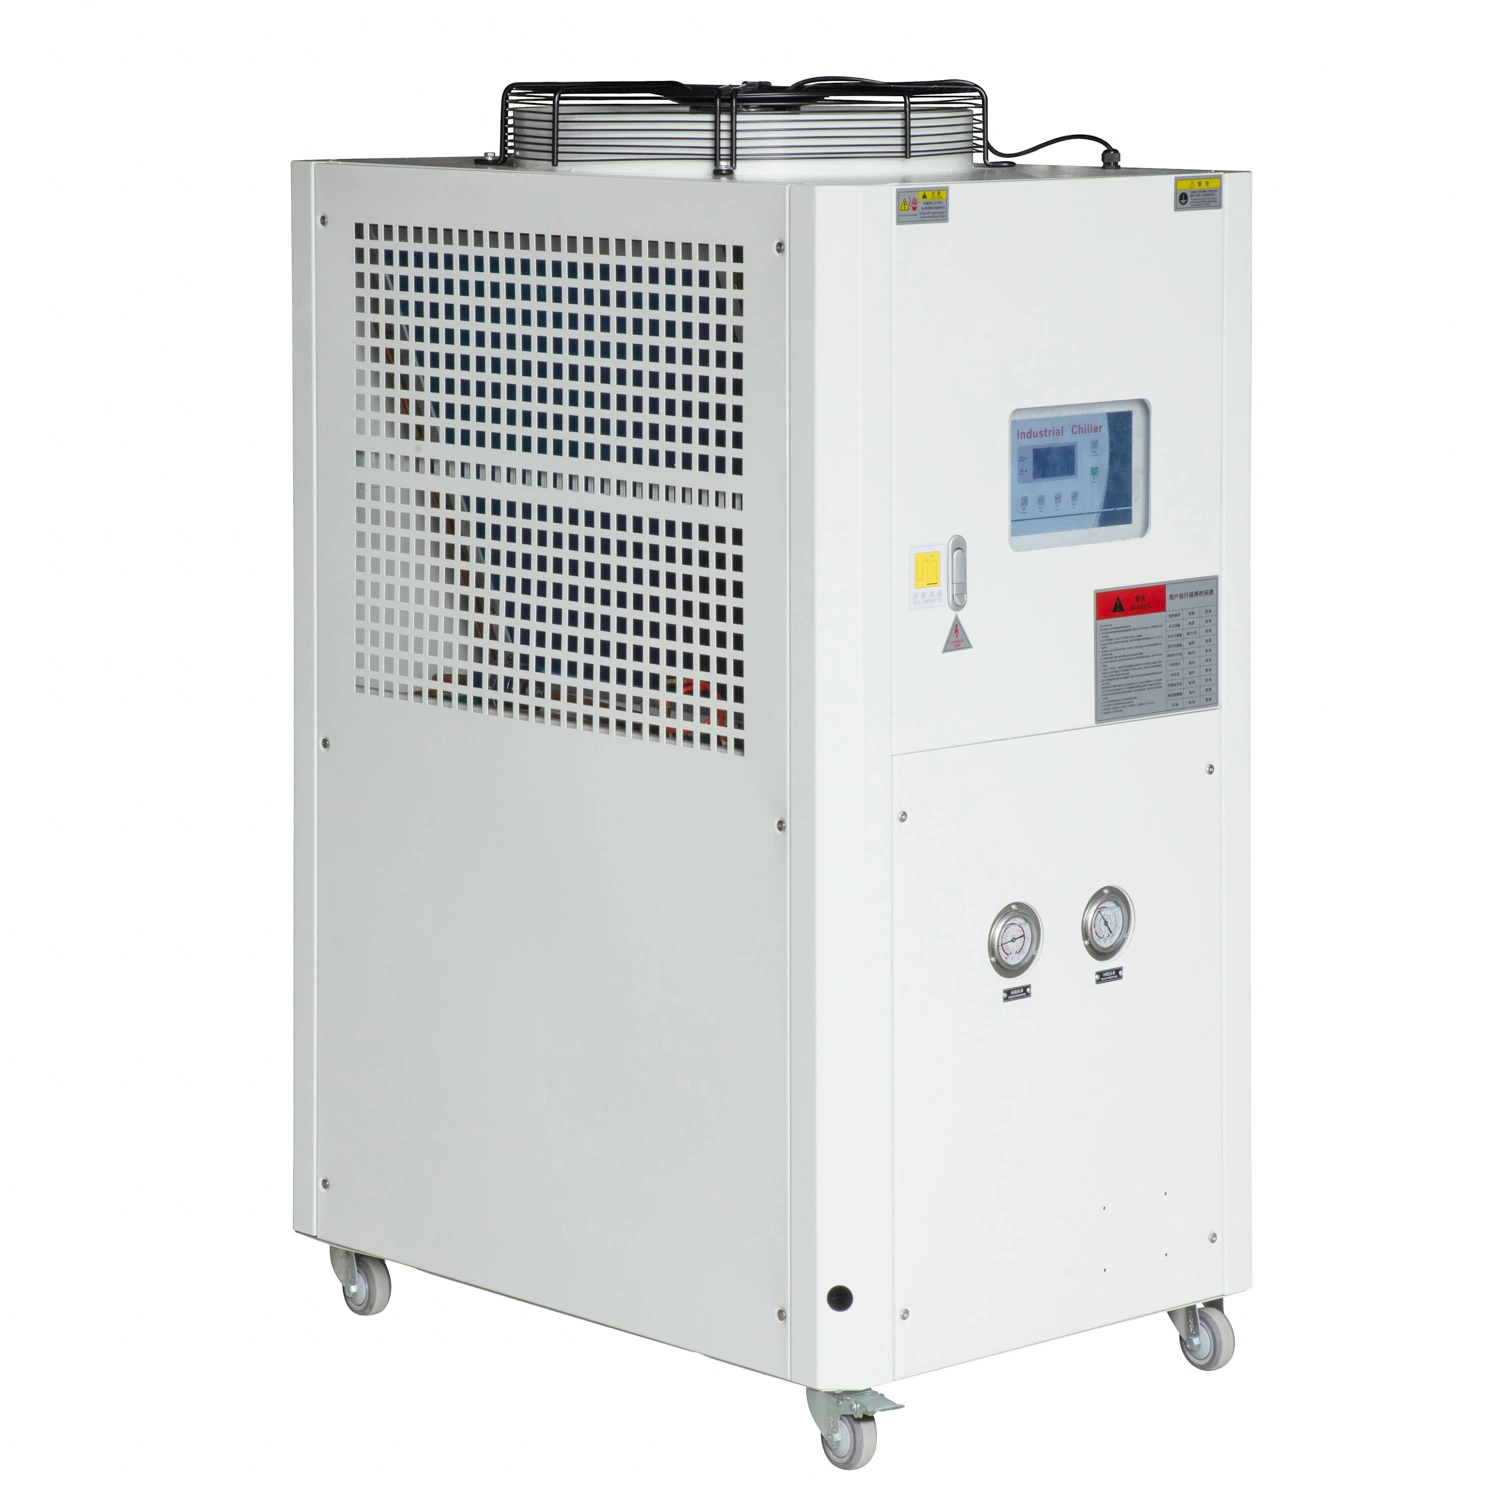 5HP водяного охладителя спиральный компрессор промышленного модульный блок охлаждения воды с воздушным охлаждением